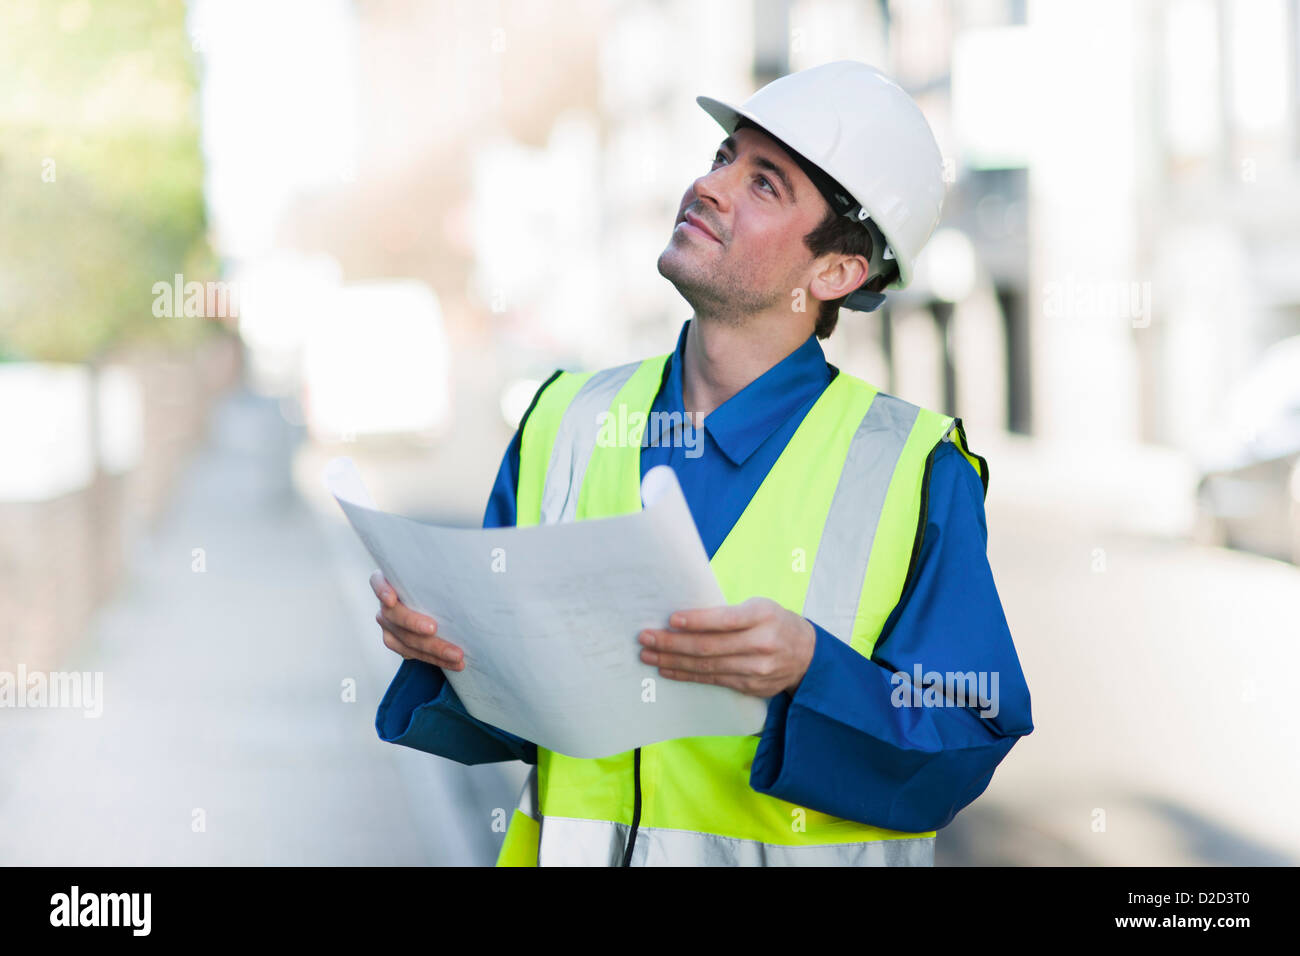 Modello rilasciato lavoratore edile che indossa un elmetto e una elevata visibilità camicia Foto Stock